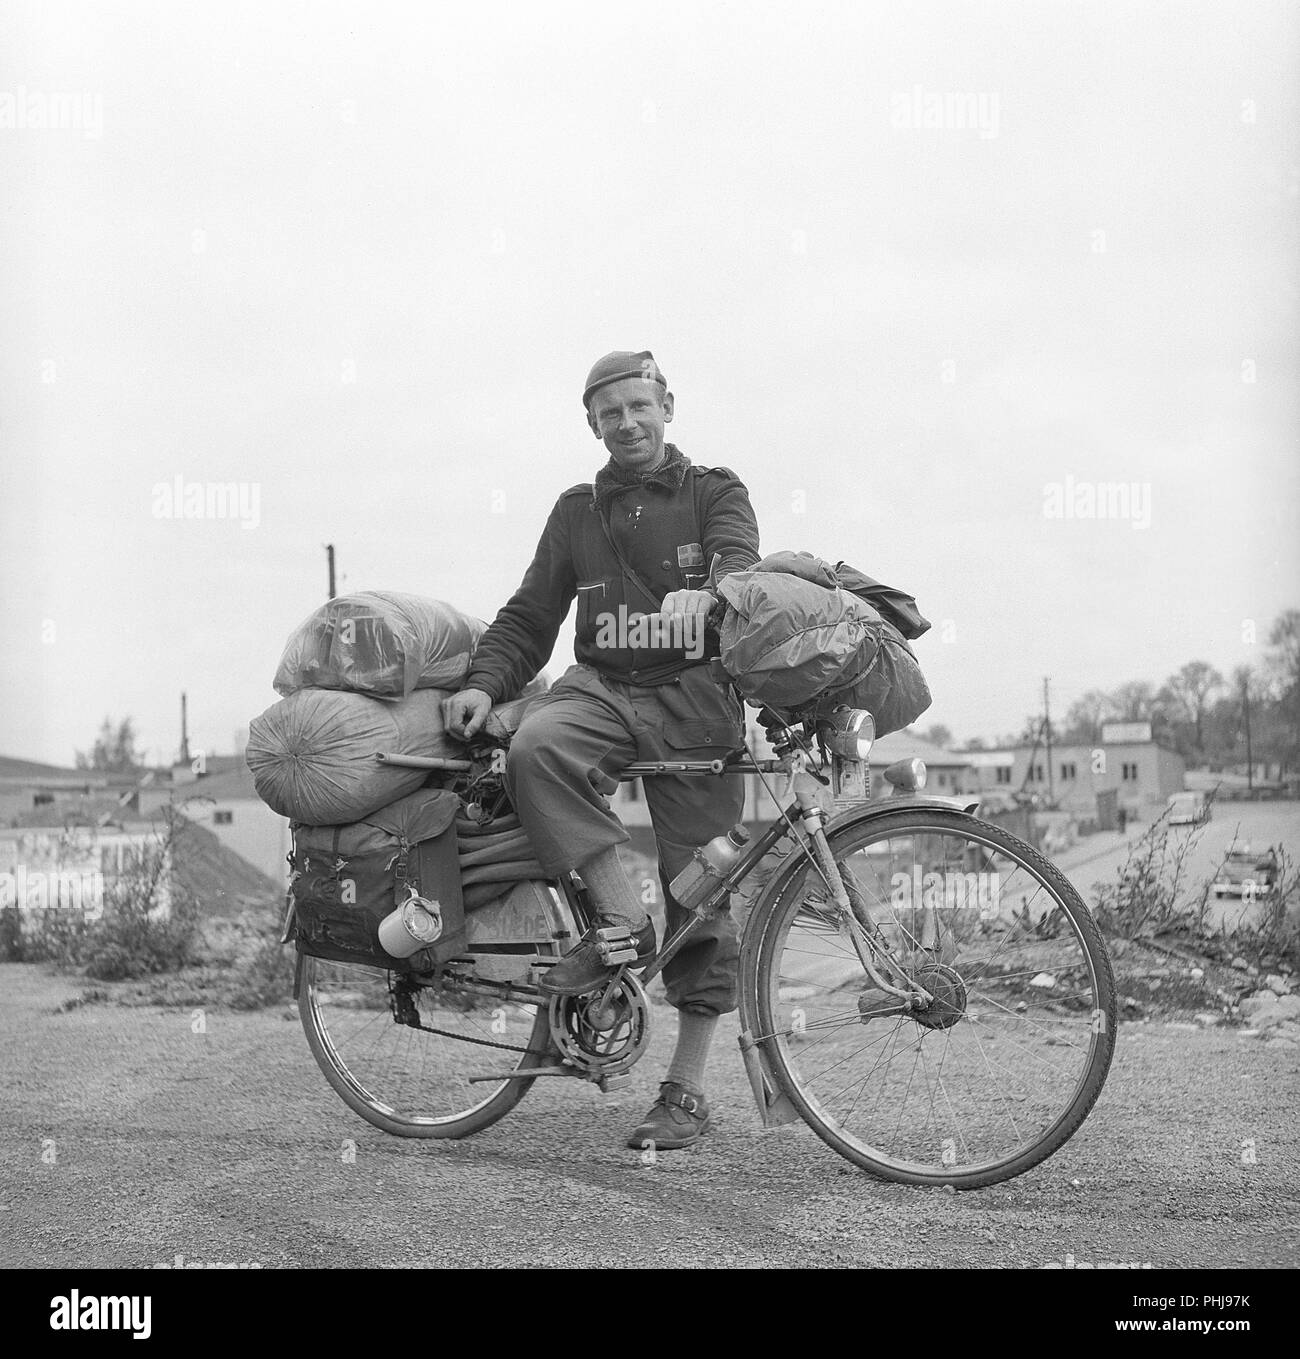 1940 l'homme sur sa bicyclette. Lennart Berg est debout avec son vélo comme le nouveau champion du monde de vélo de tourisme. Comment ce titre est acchieved n'est pas clair, mais cette longue distance à vélo se fait le long d'un ou plusieurs sentiers de vélo en Suède et à l'étranger. Le vélo est lourdement chargé avec tente, sac de couchage et d'autres articles nécessaires en randonnée le long du sentier. La Suède 1945 ref BV100-9 Banque D'Images